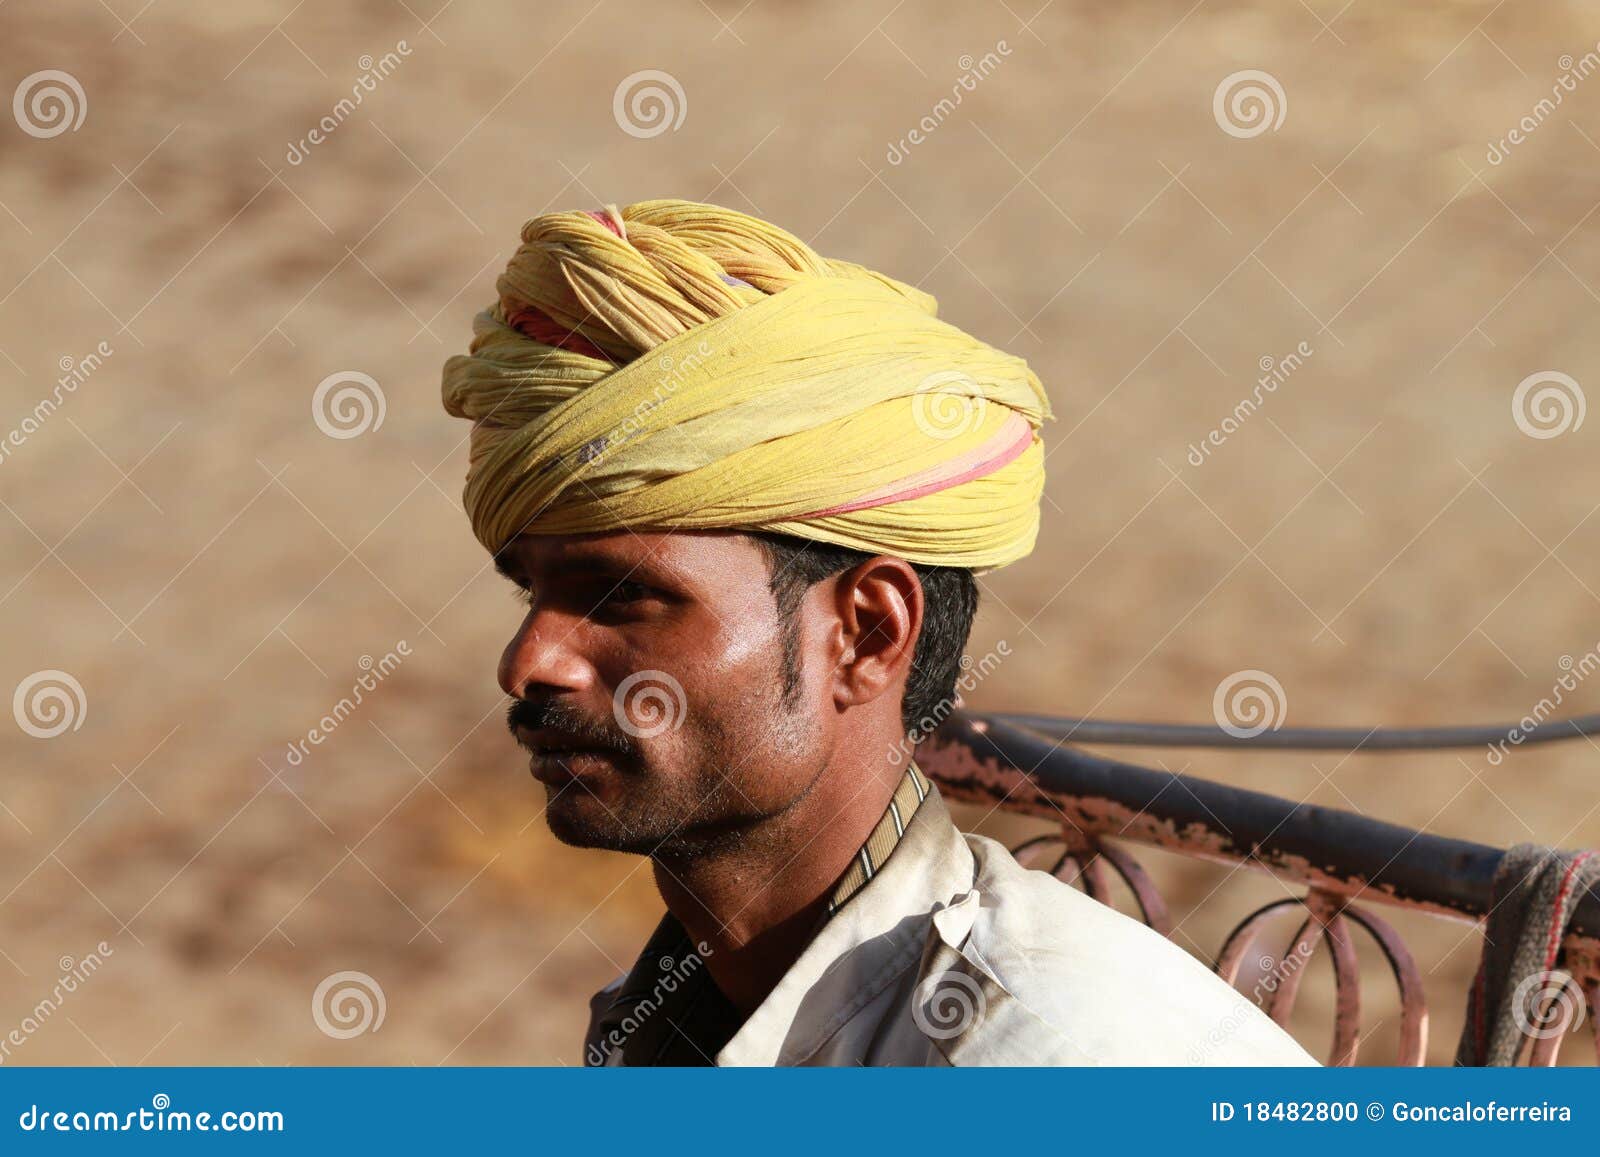 Hombres indios imagen editorial. Imagen de cara, vida - 18482800